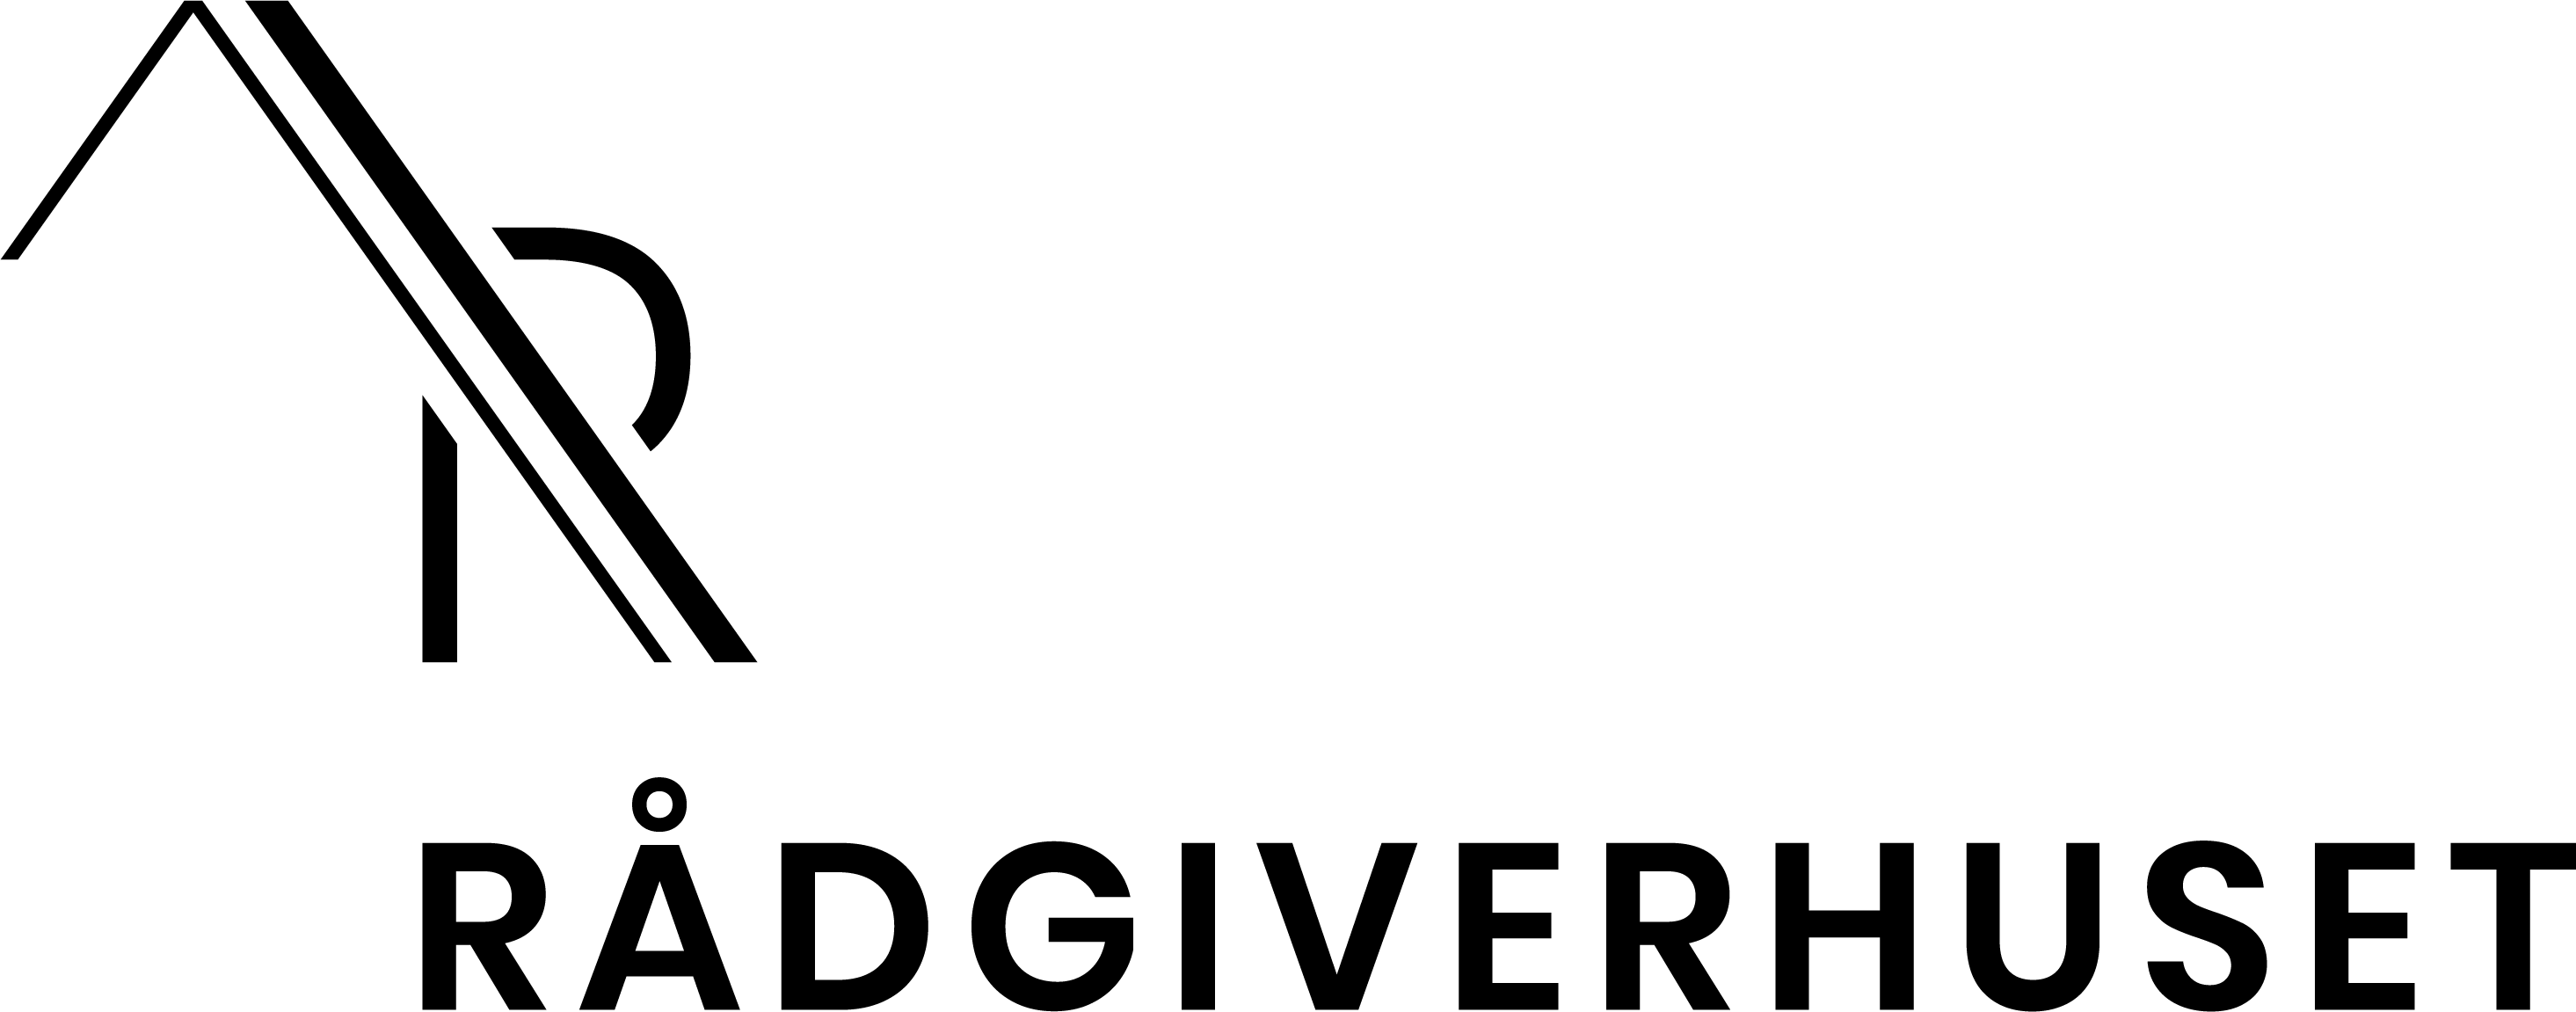 Rågiverhuset logo